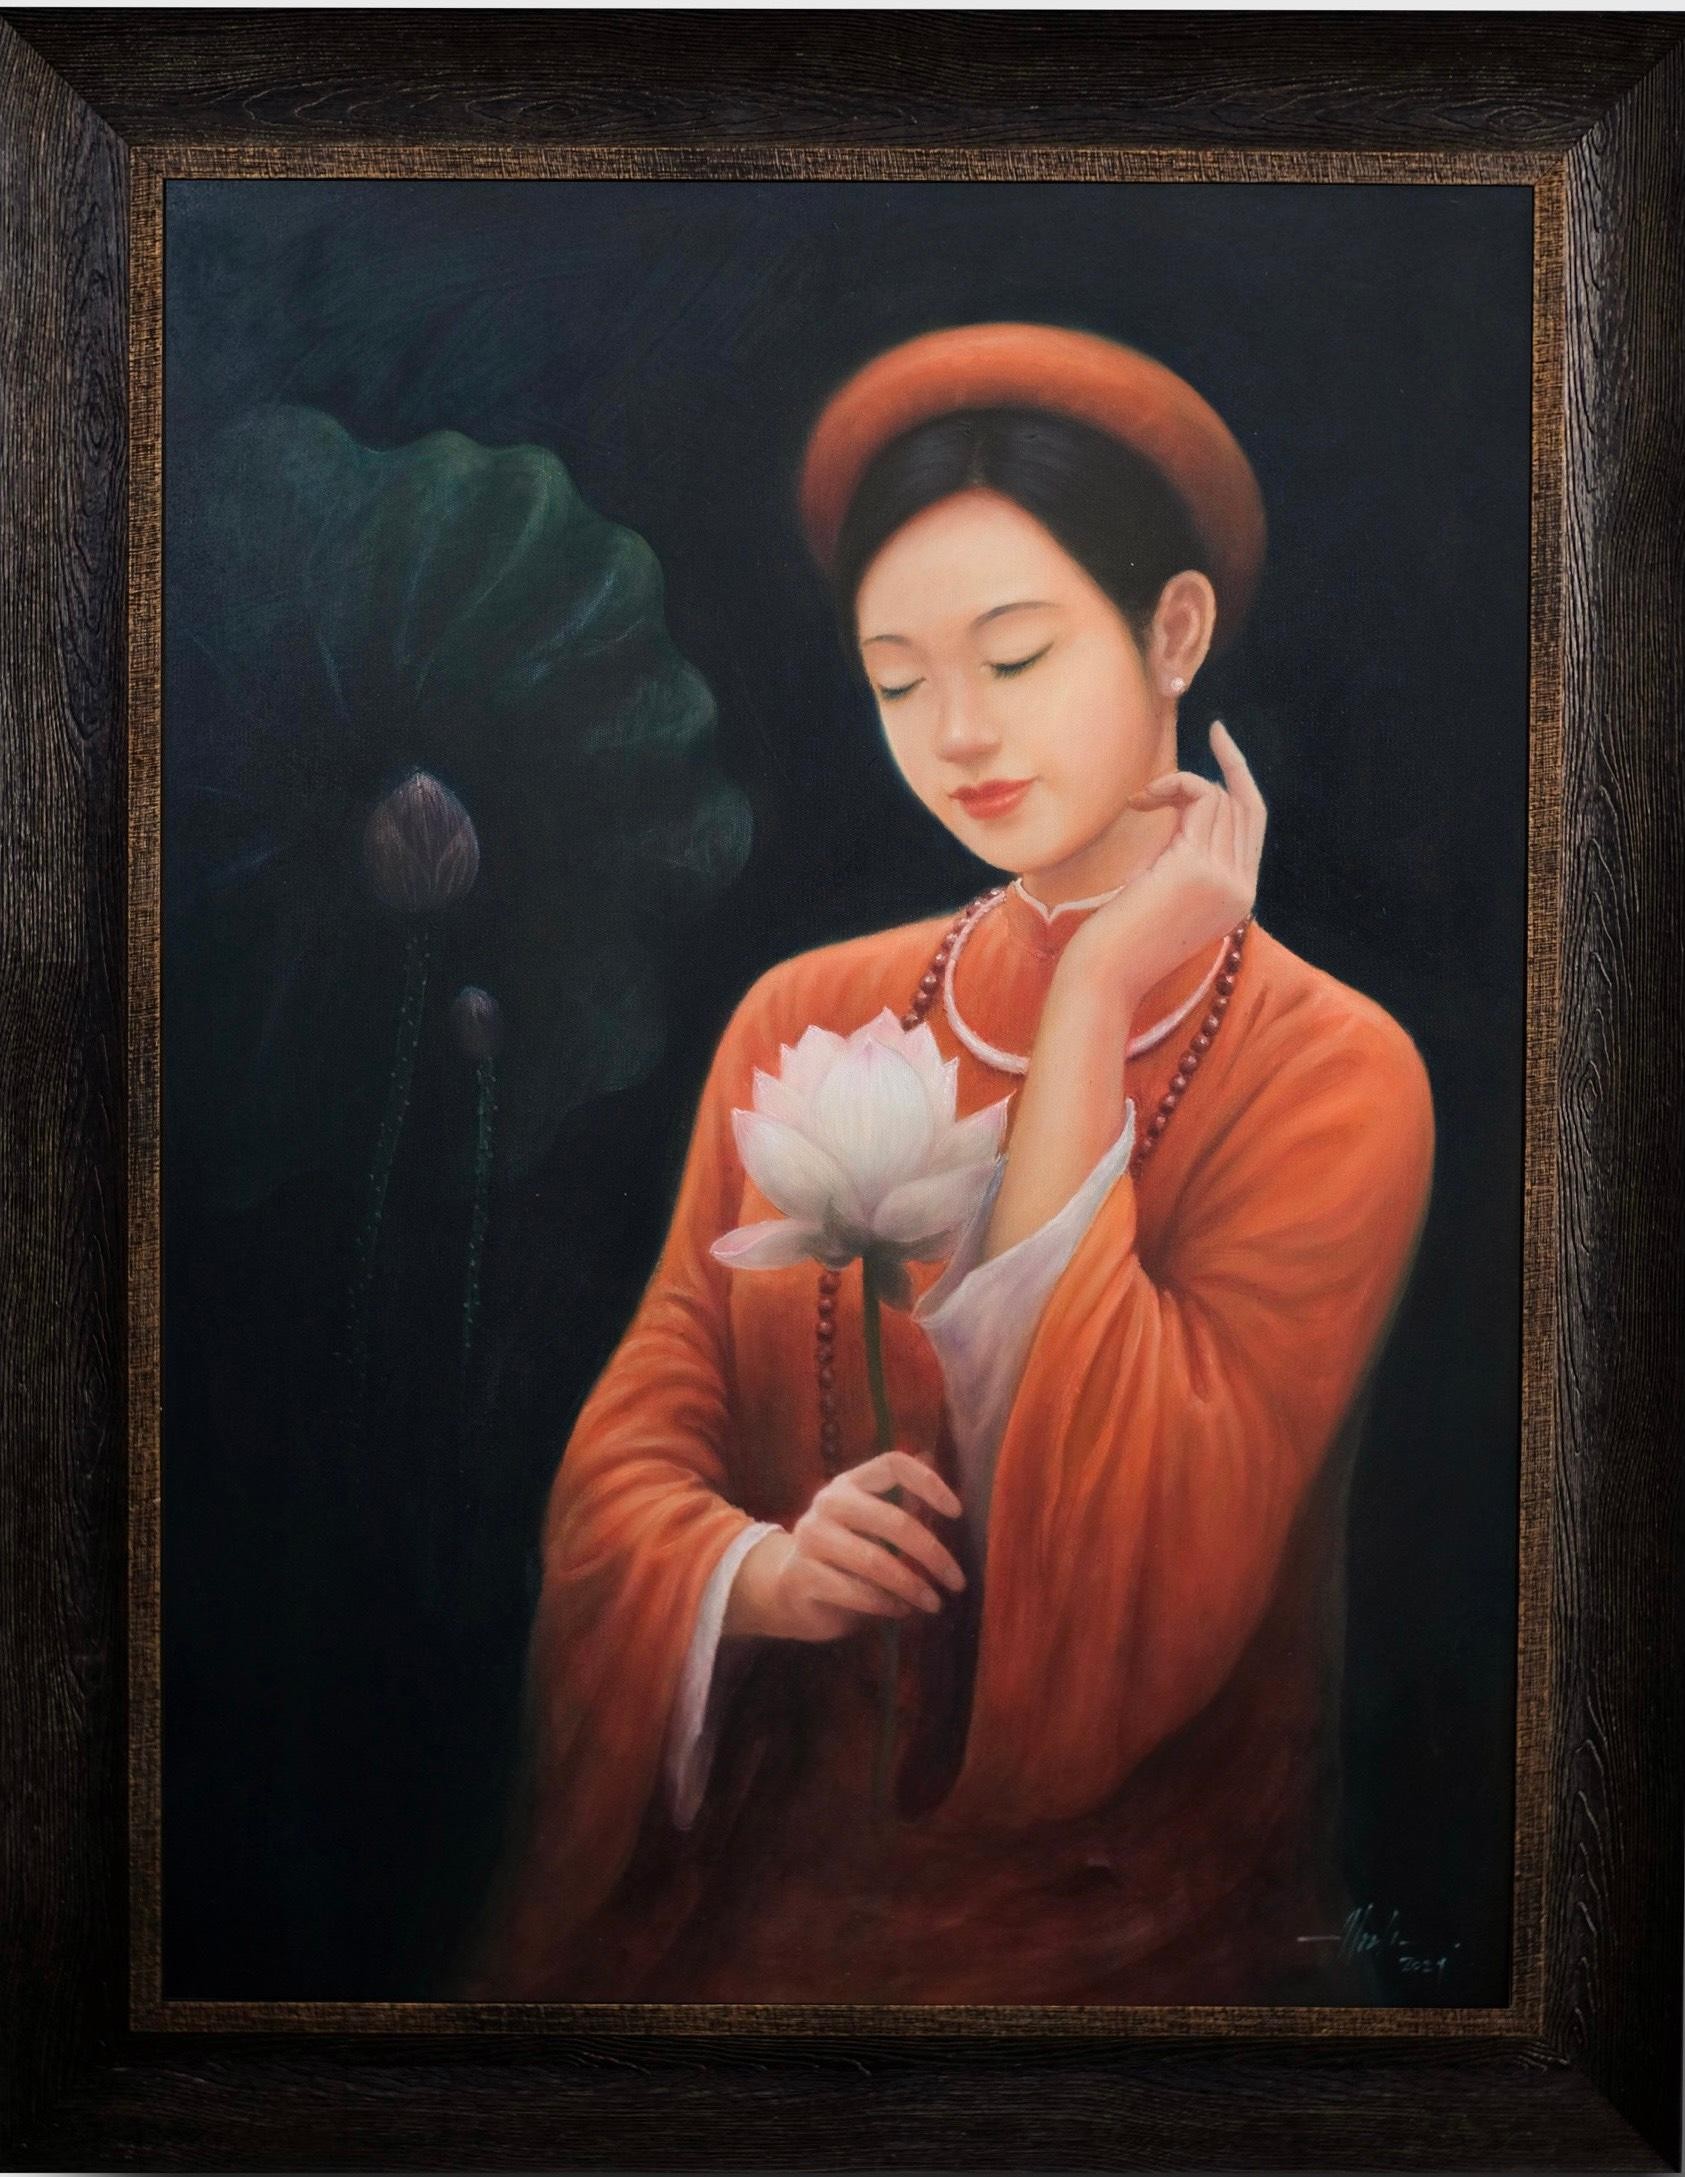 Làng nghề Việt Nam là một kho tàng văn hóa truyền thống đầy sáng tạo và tự hào. Đến với làng nghề, bạn sẽ được trải nghiệm không gian yên tĩnh, tìm hiểu thêm về những bí quyết và kỹ năng của các nghệ nhân và chiêm ngưỡng những sản phẩm đồ thủ công tuyệt vời.